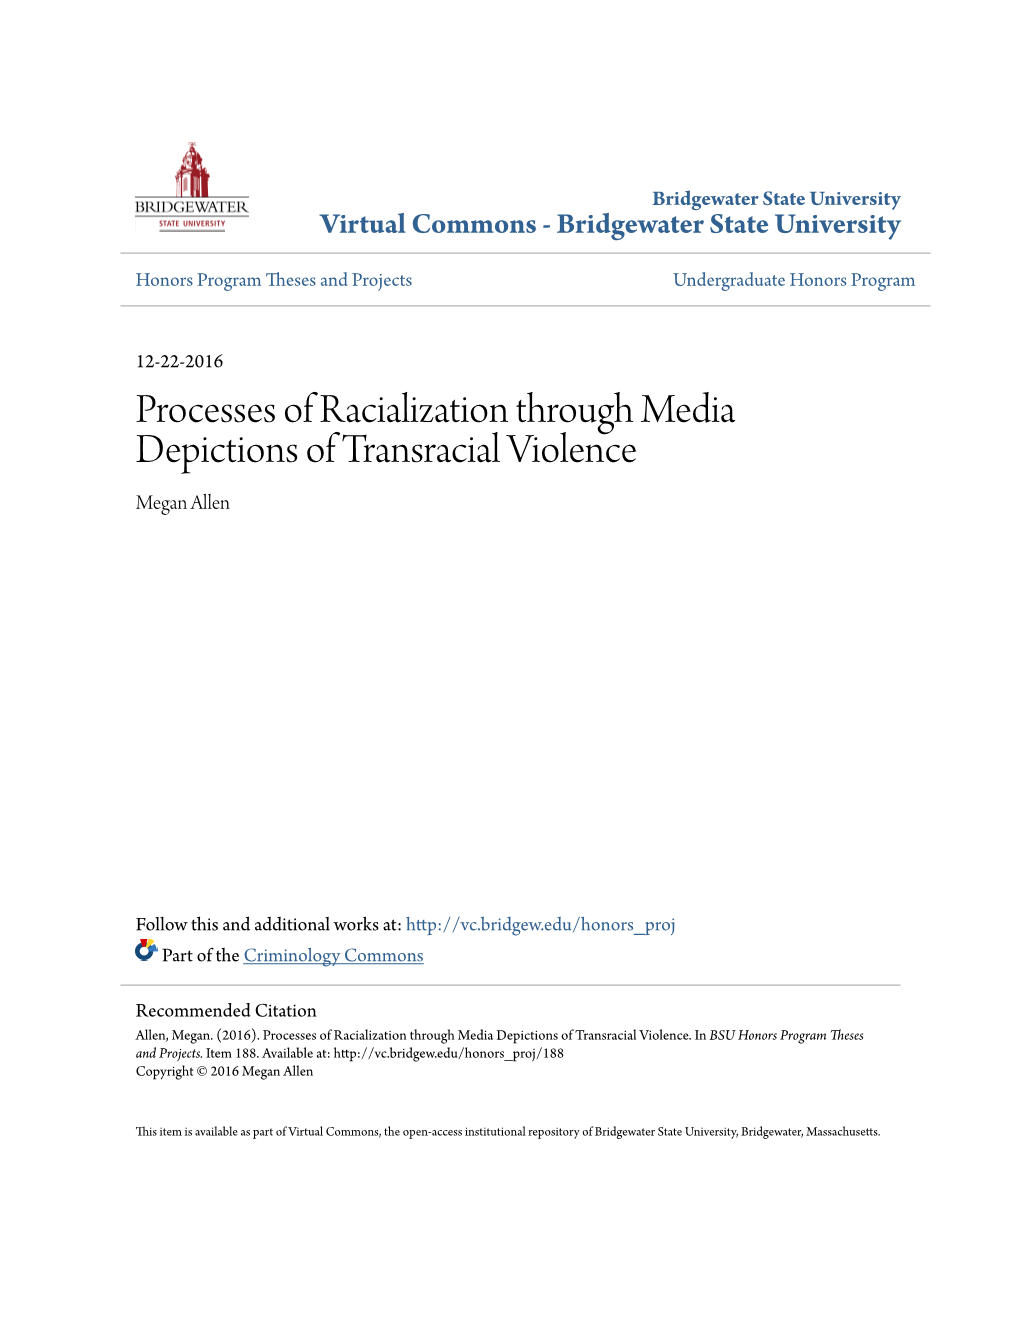 Processes of Racialization Through Media Depictions of Transracial Violence Megan Allen